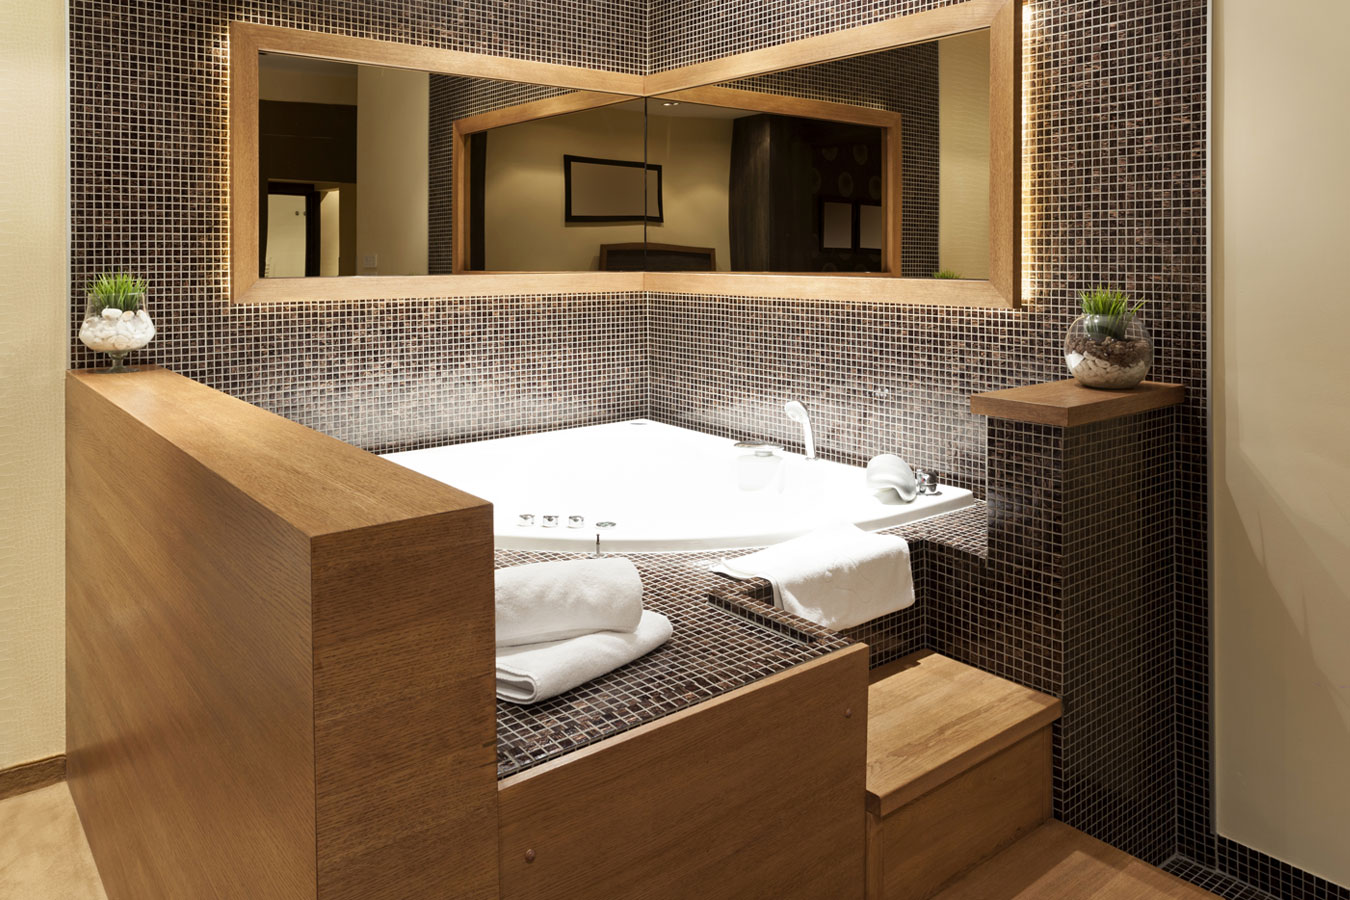 Marmer mozaïek - natuursteen in de badkamer - ingebouwd bad